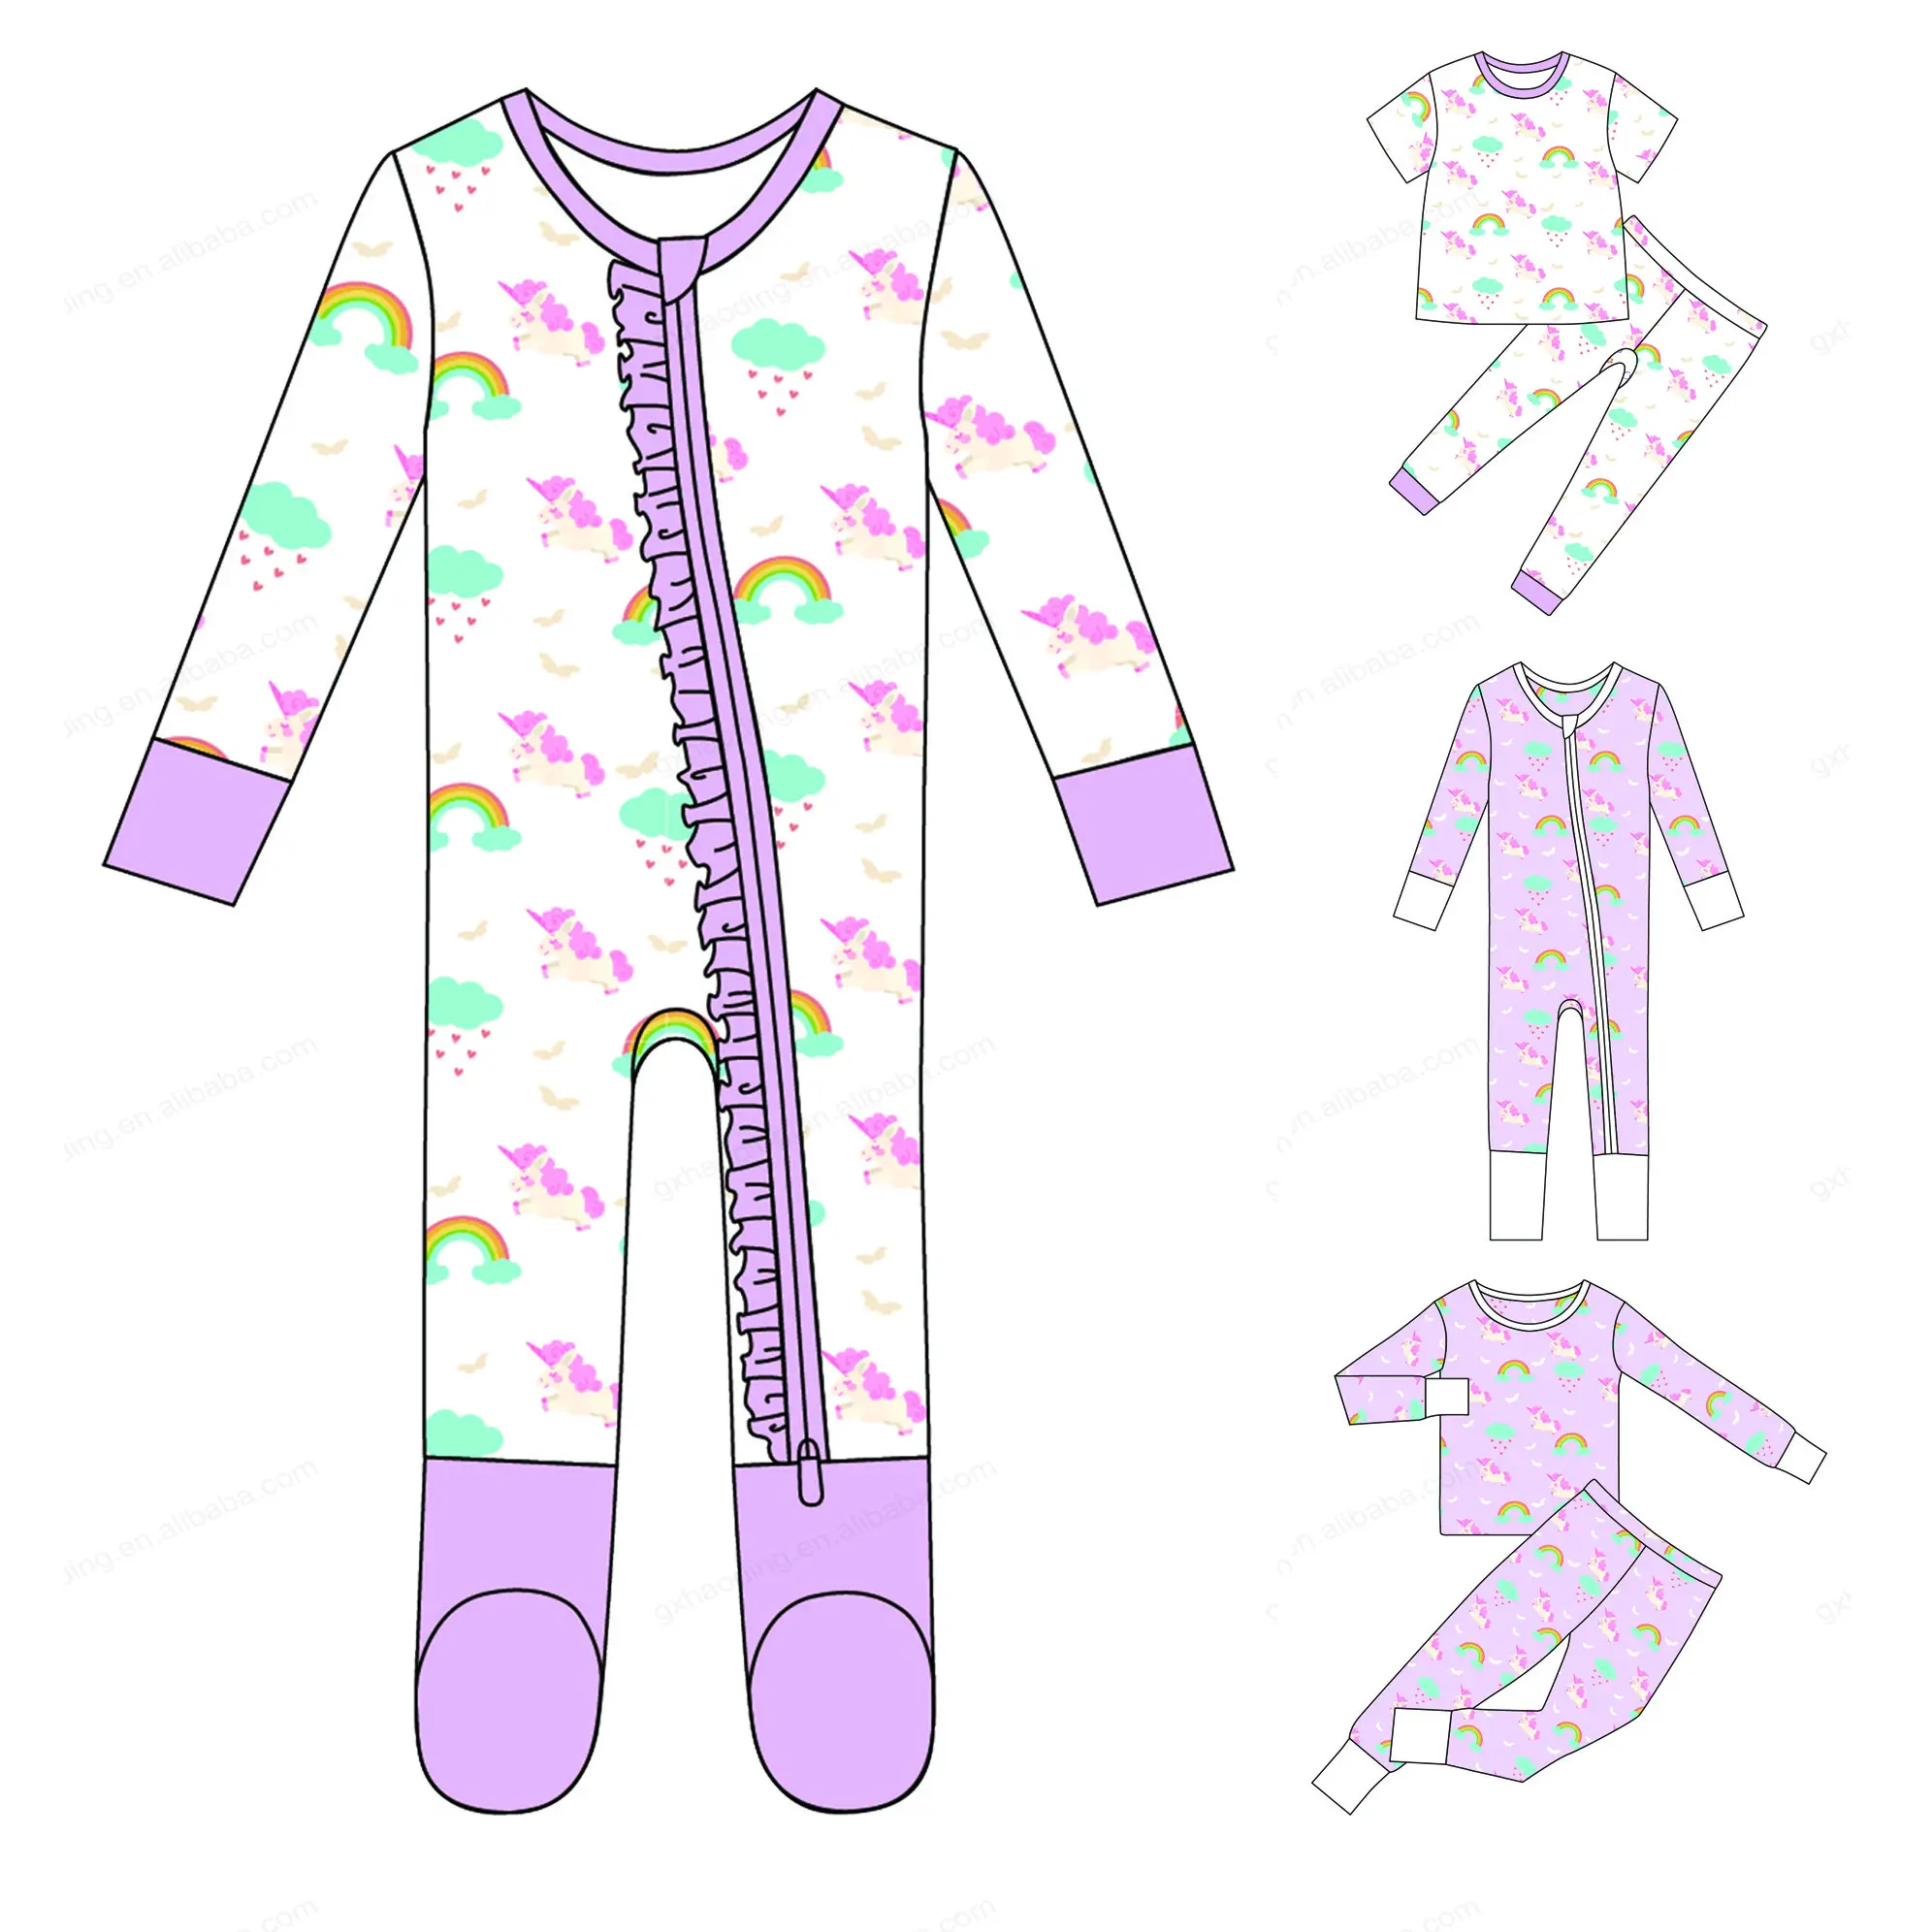 Muestra gratis de ropa de dormir de bambú impresa personalizada bebé ajustado unicornio Convertible Footie pijamas de bambú bebé mameluco Niña